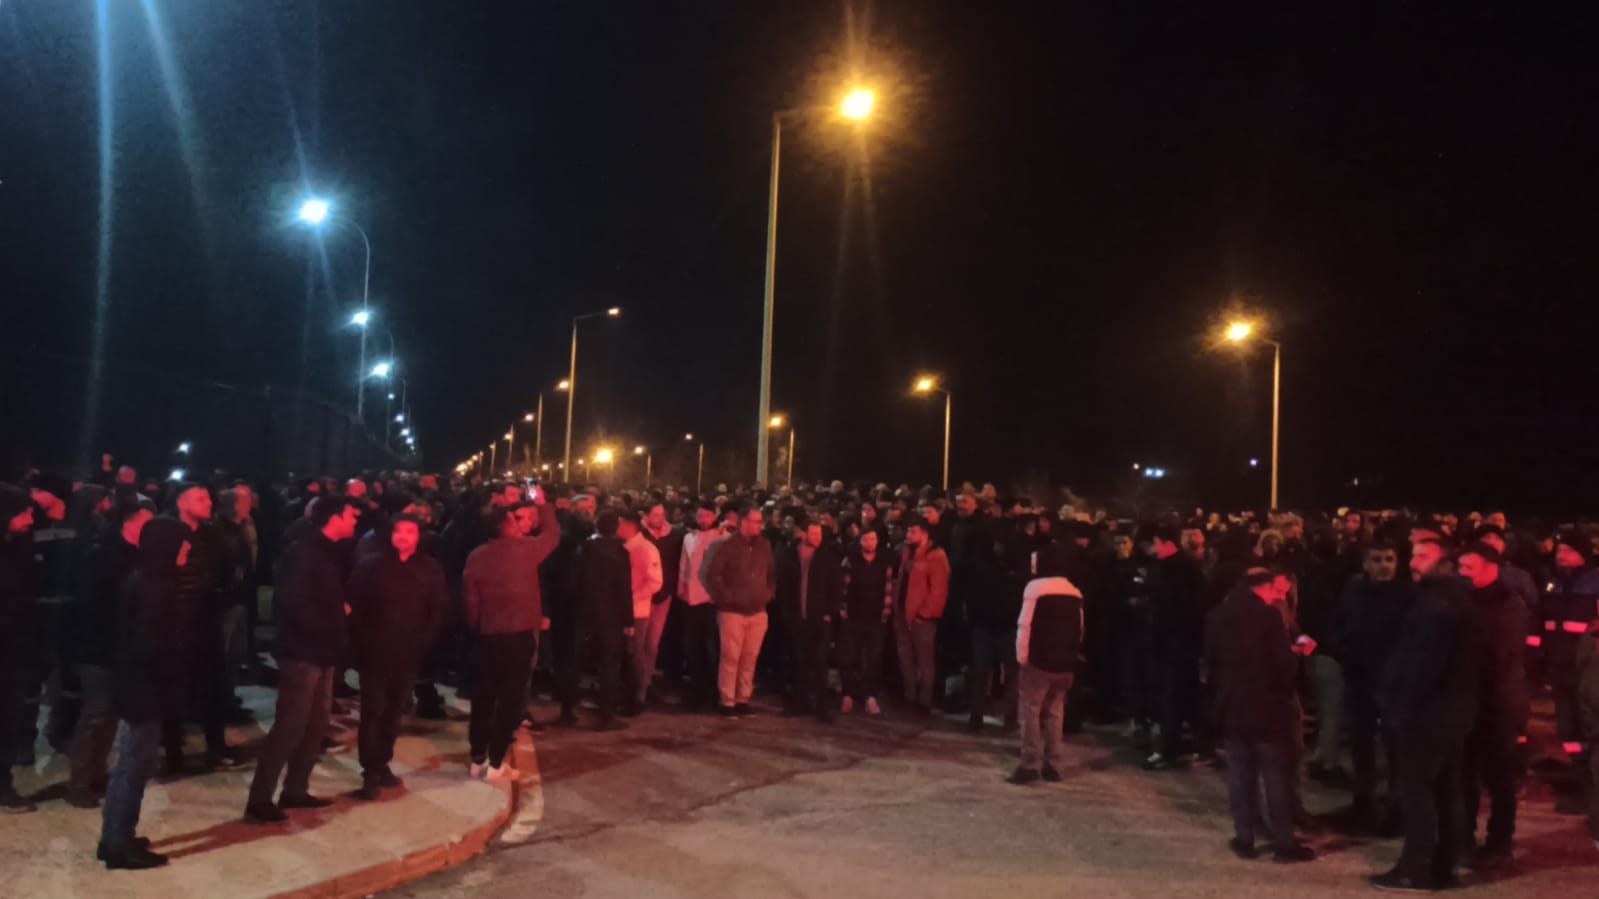 Konya Seydişehir Eti Alüminyum Fabrikası tüm çalışanlarına mesaj attı